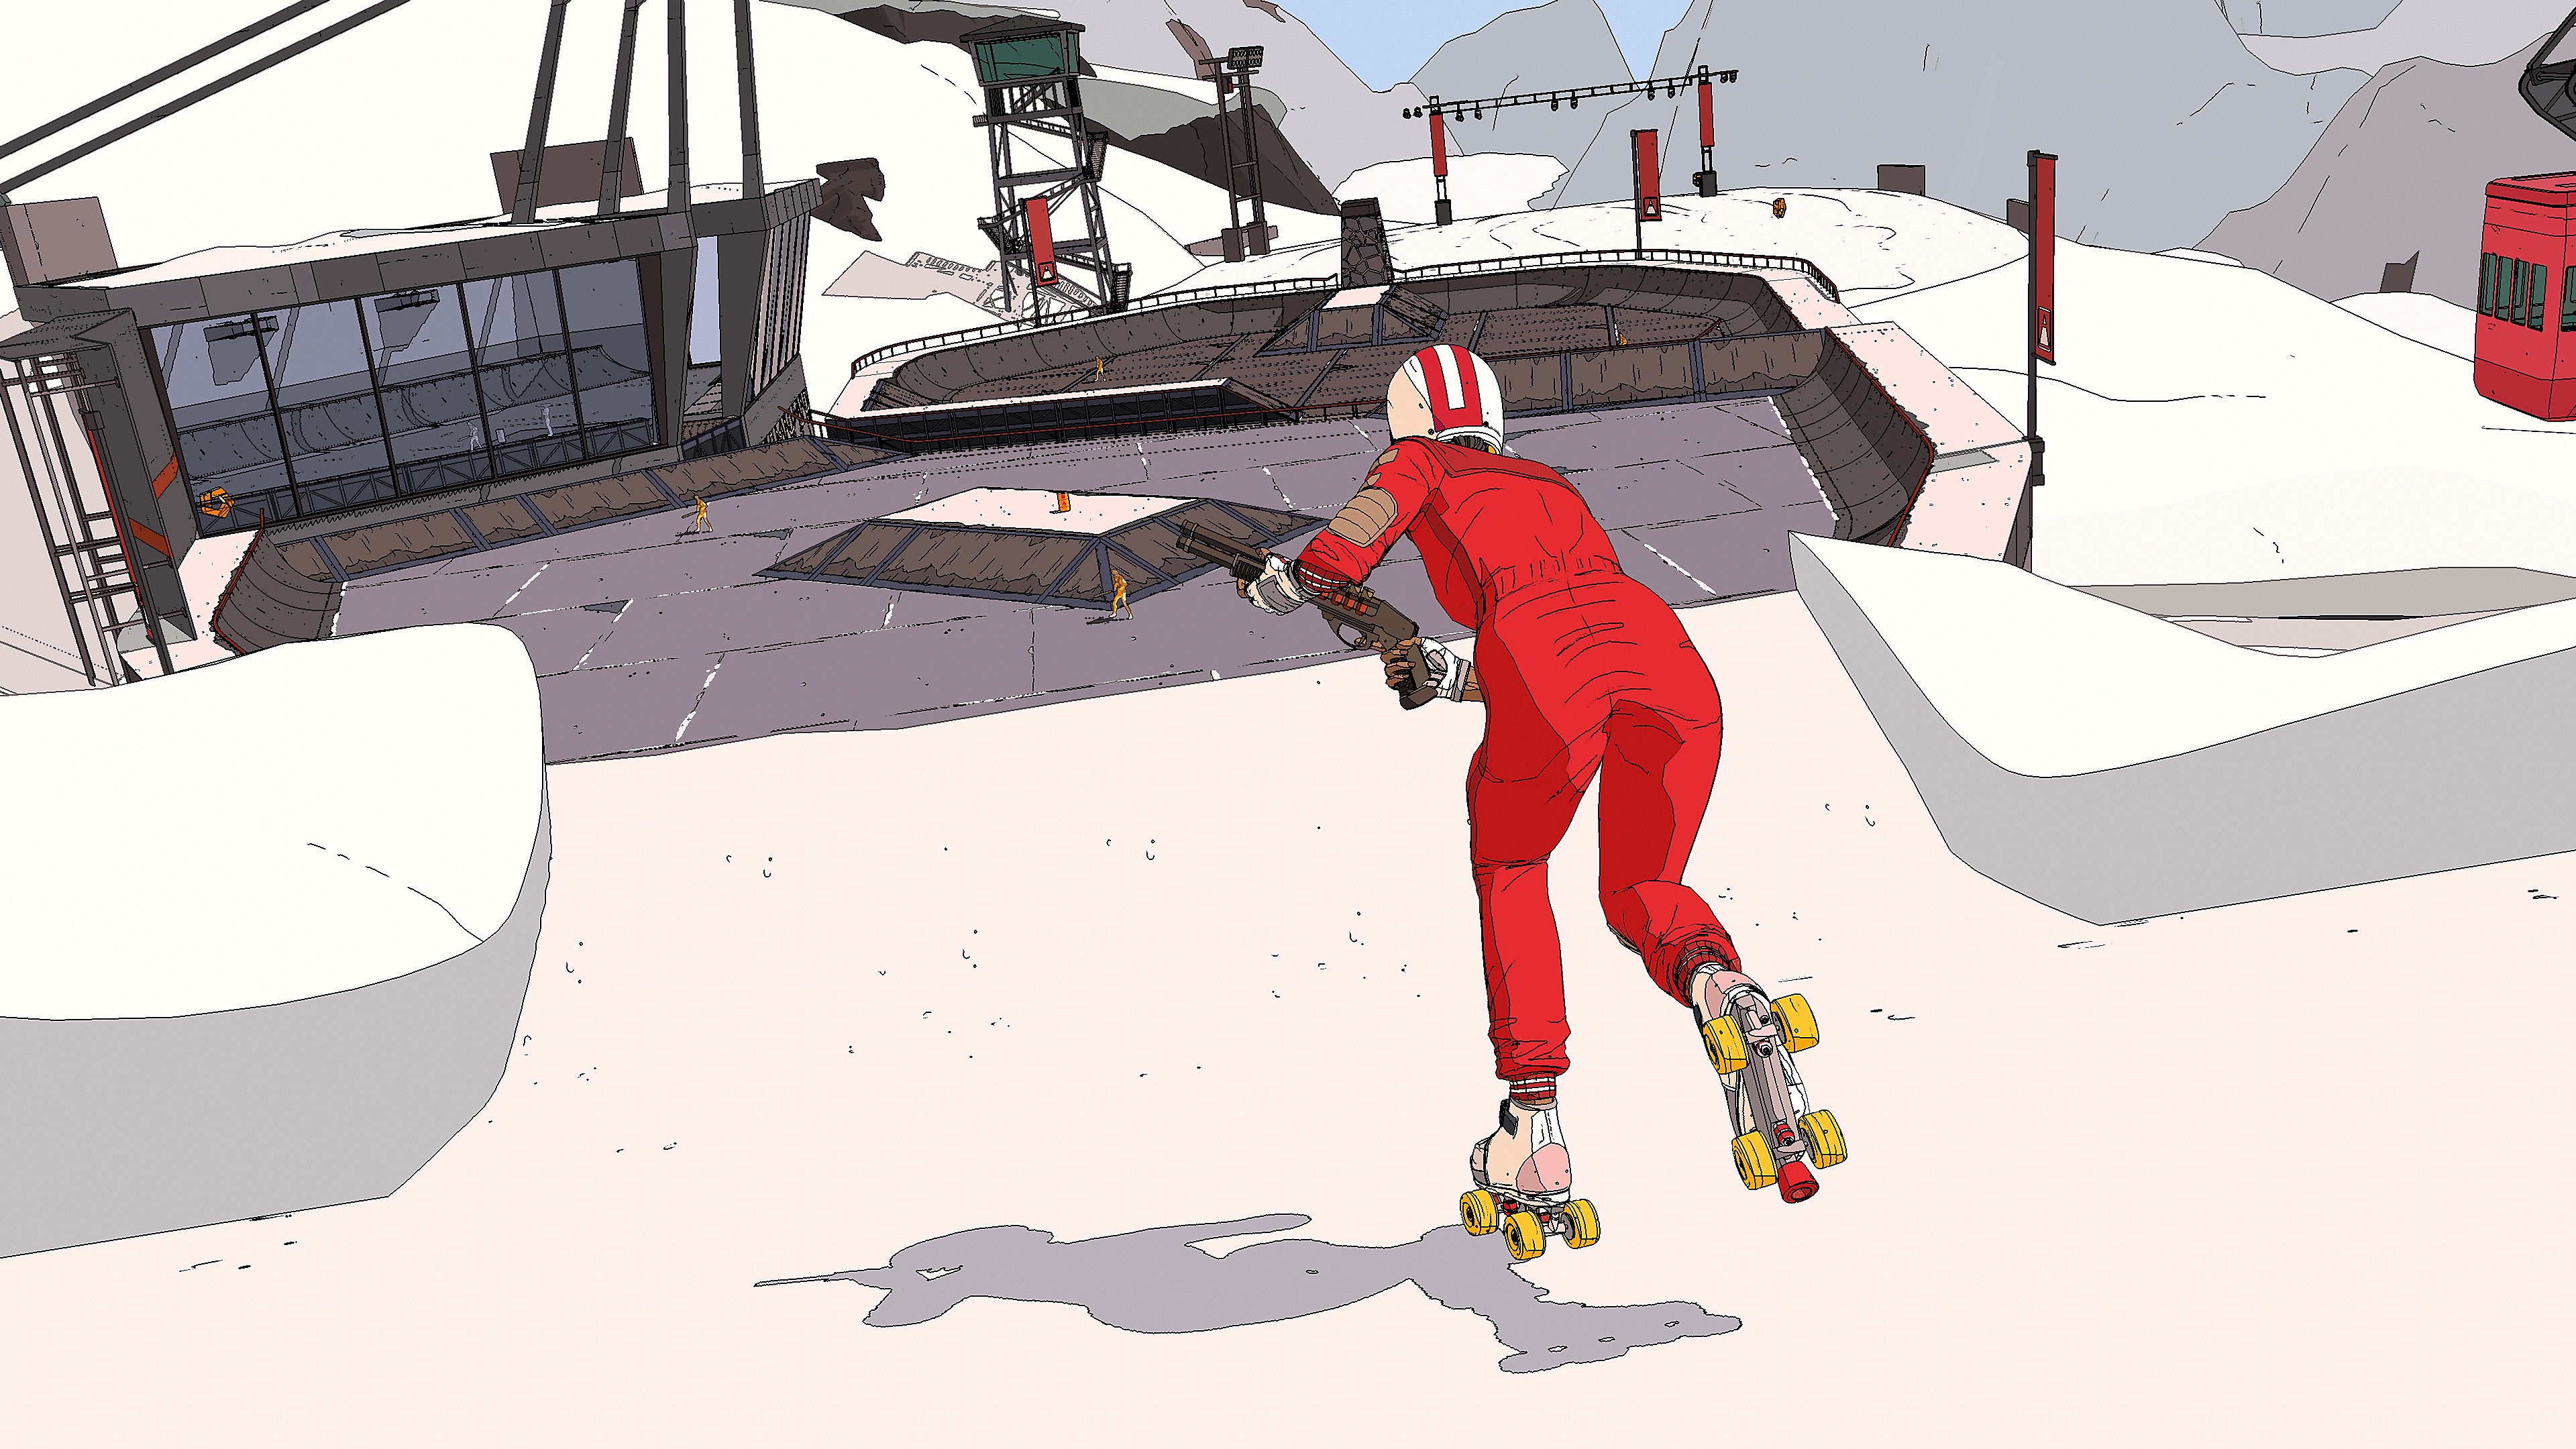 Capture d'écran de Rollerdrome - un skater en combinaison, casqué et armé